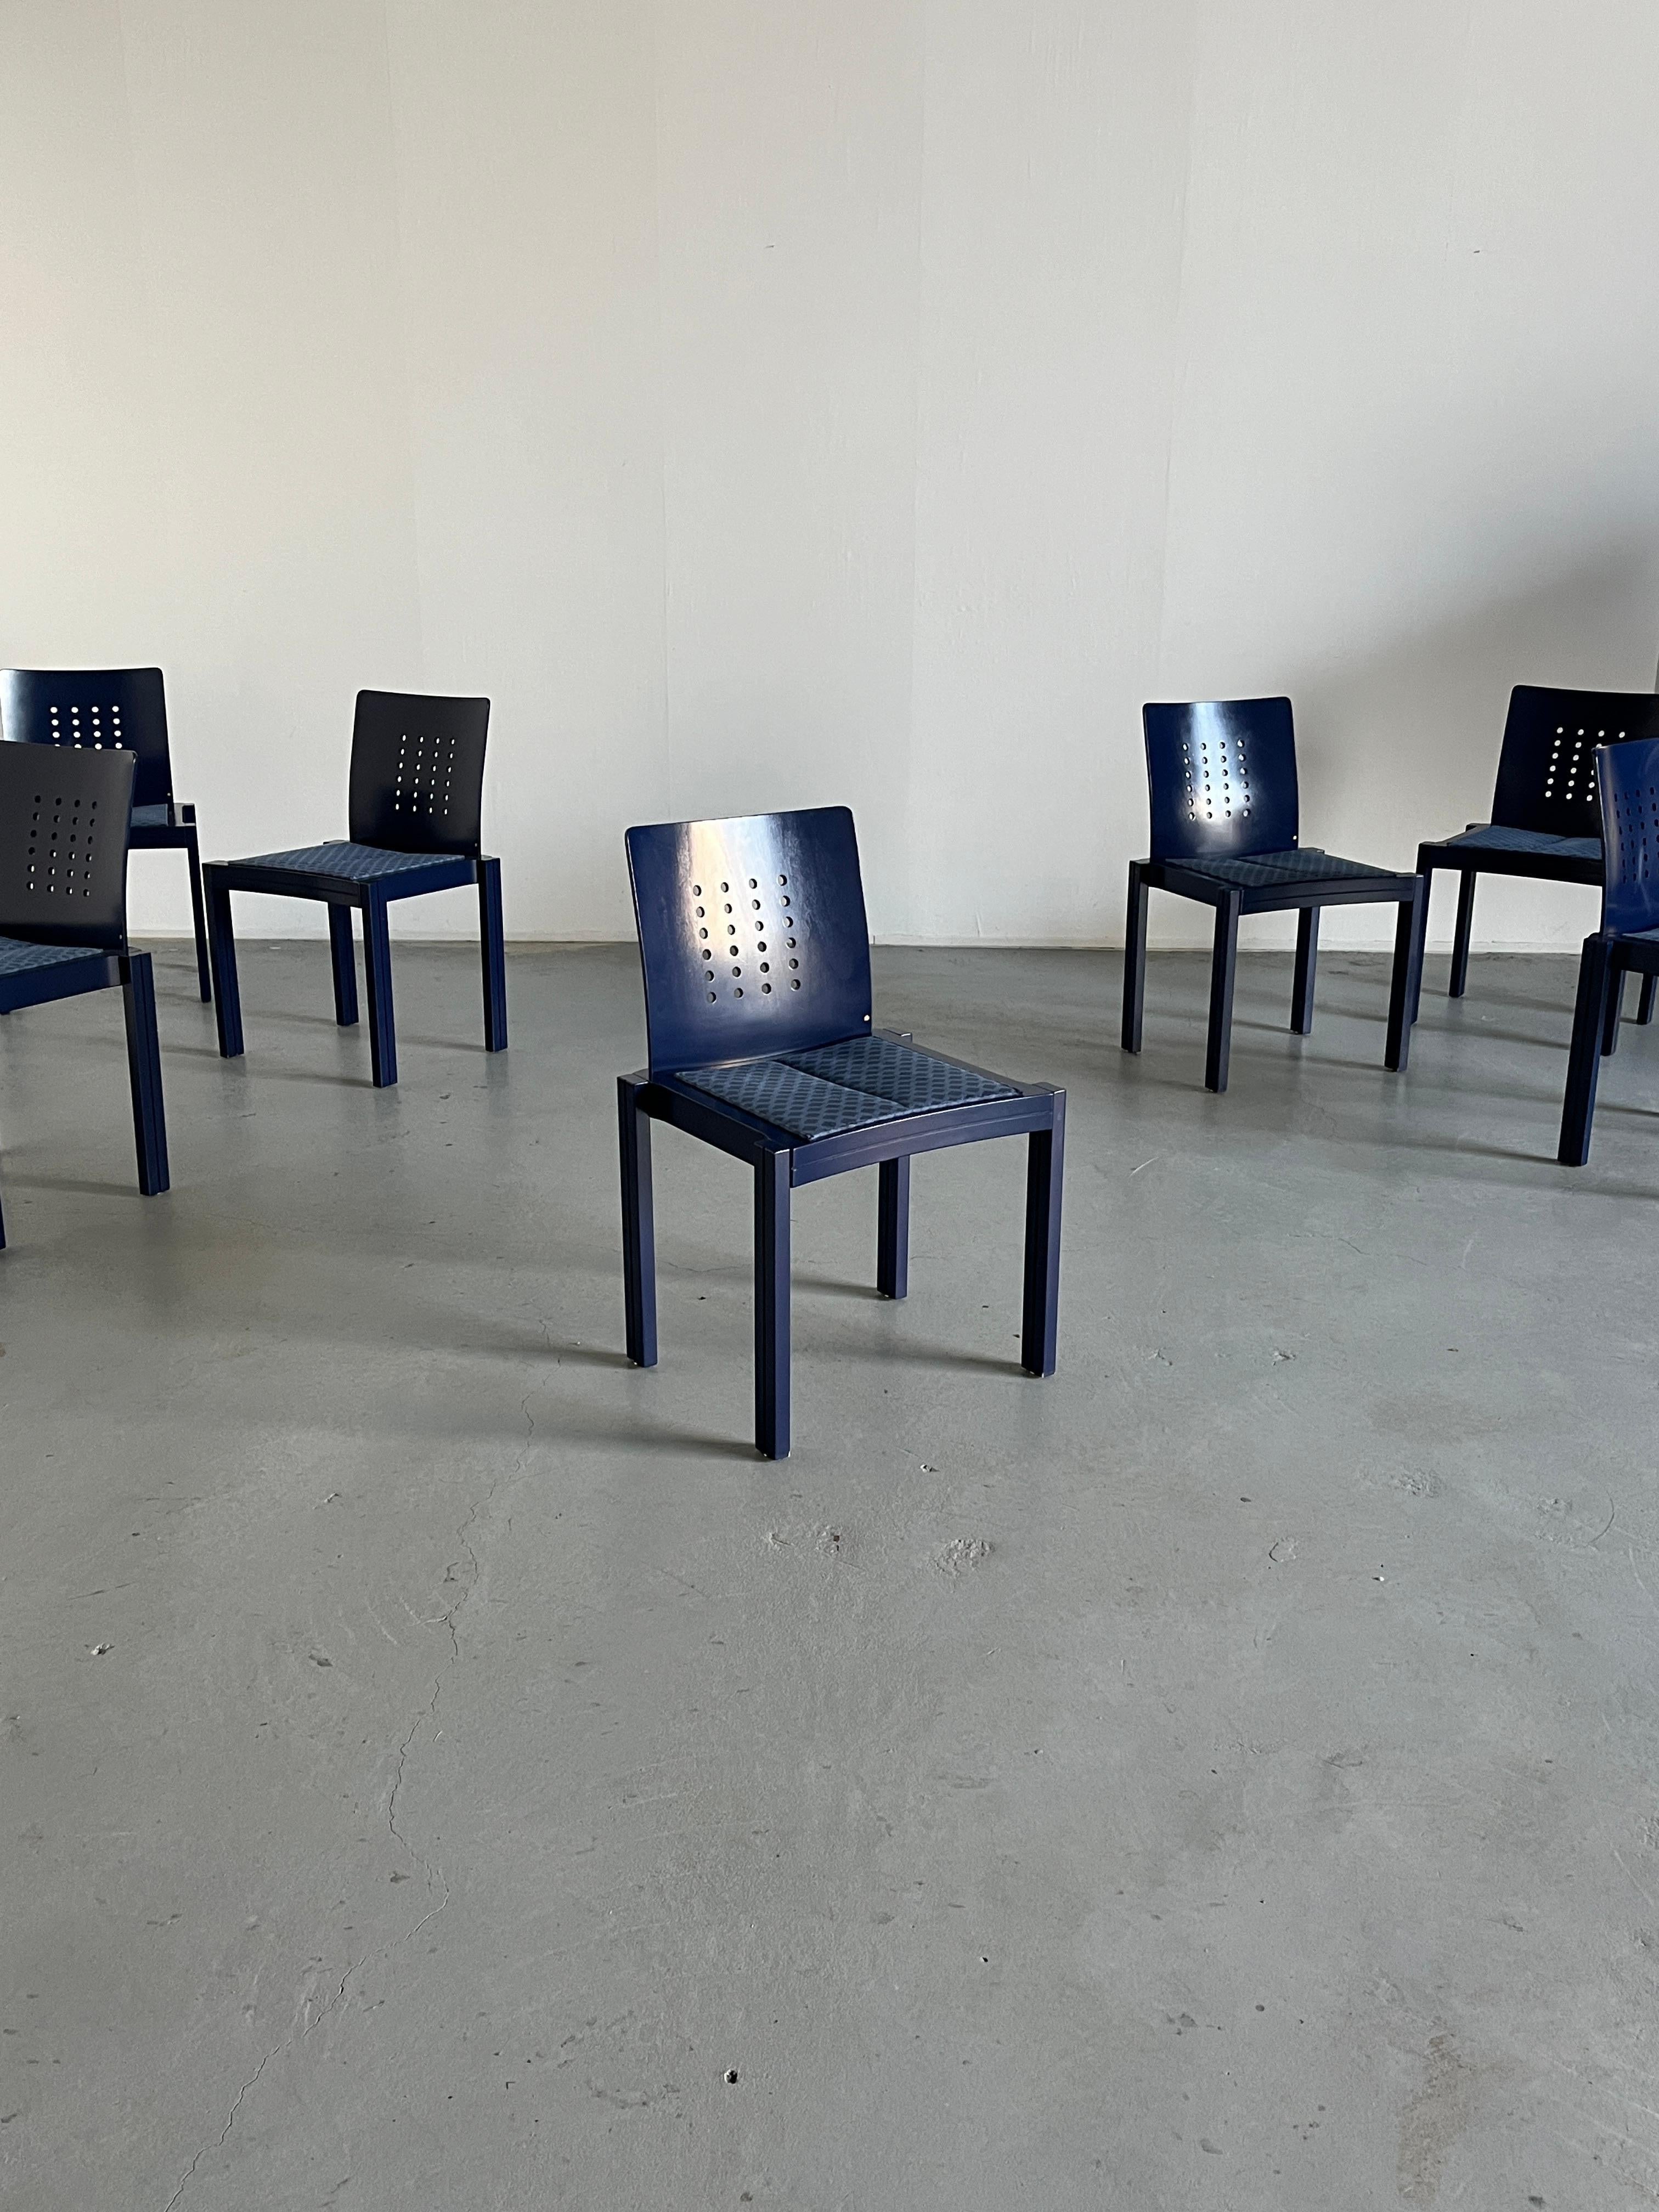 Exceptionnellement rares et de collection, les chaises de salle à manger originales de Thonet, au design postmoderne de Memphis. 
Sculpture et forme géométrique.

Vendu par pièce.
Vingt pièces disponibles.

Produit par Thonet Vienna en